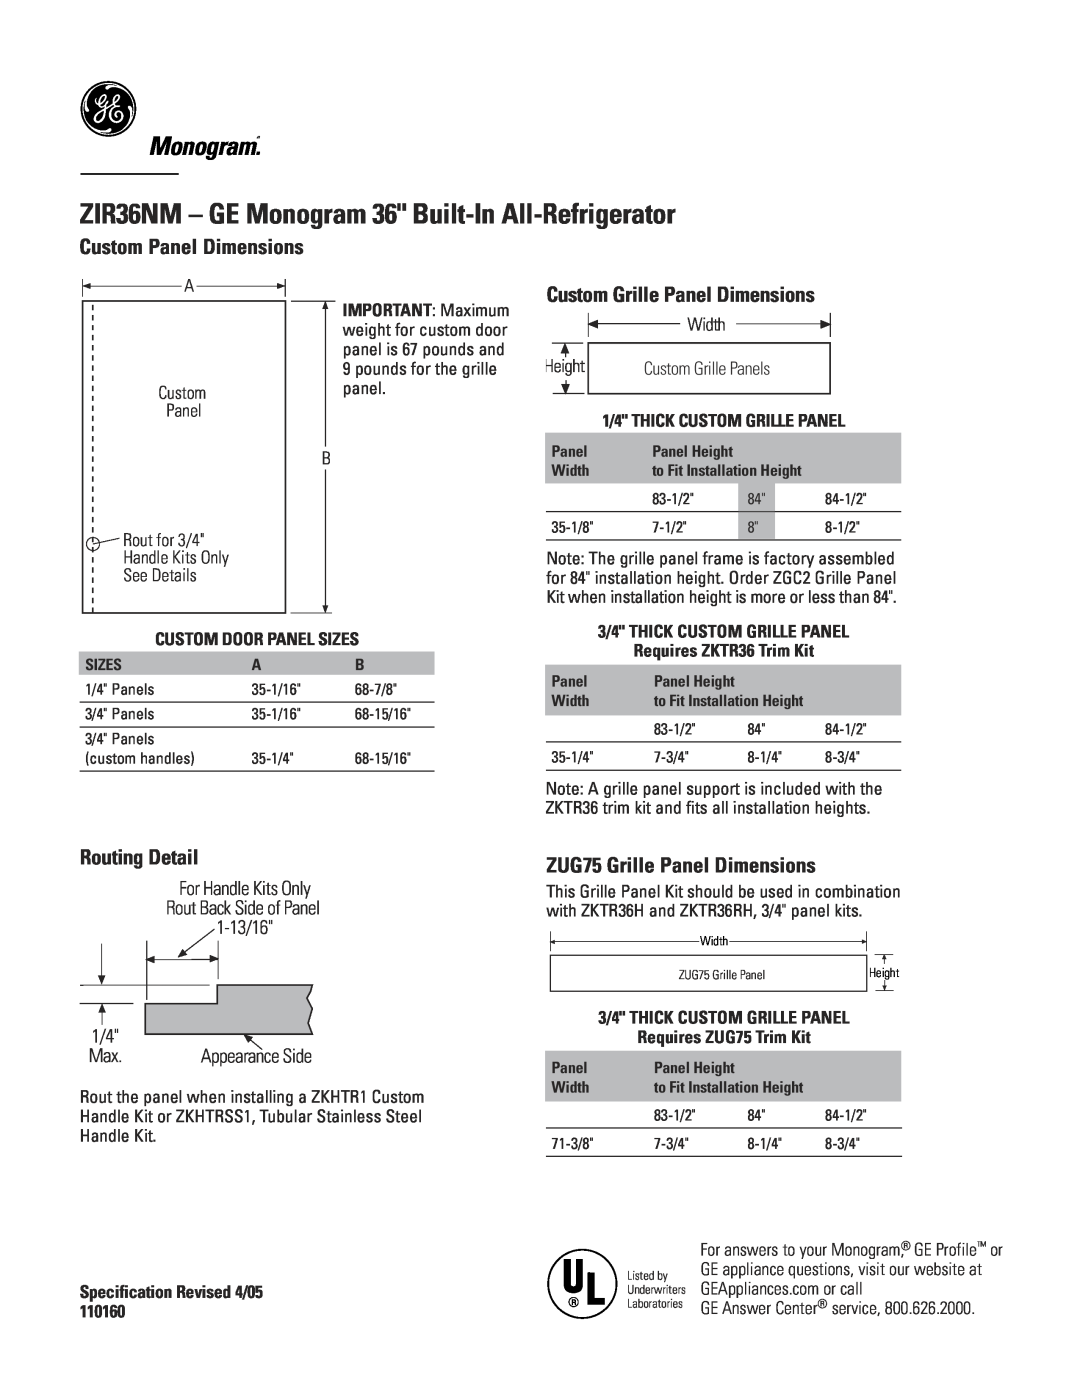 GE ZIR36NM - GE Monogram 36 Built-In All-Refrigerator, Monogram.“, Custom Panel Dimensions, Routing Detail, Width 